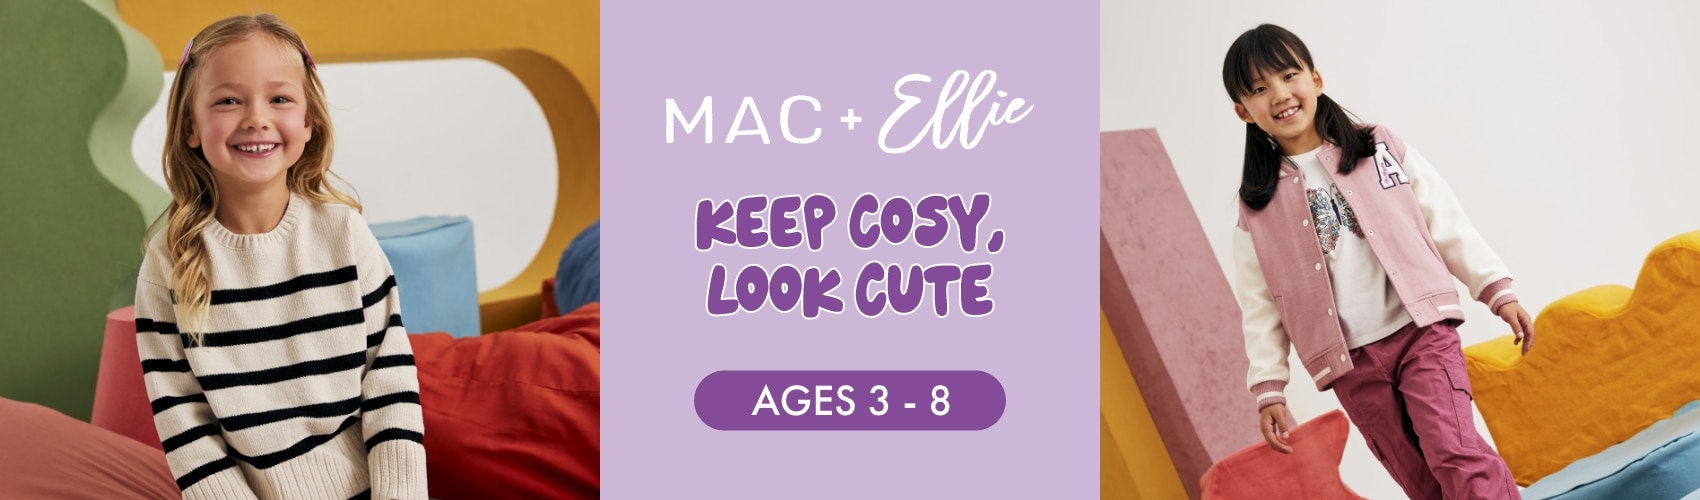 Mac & Ellie Girls